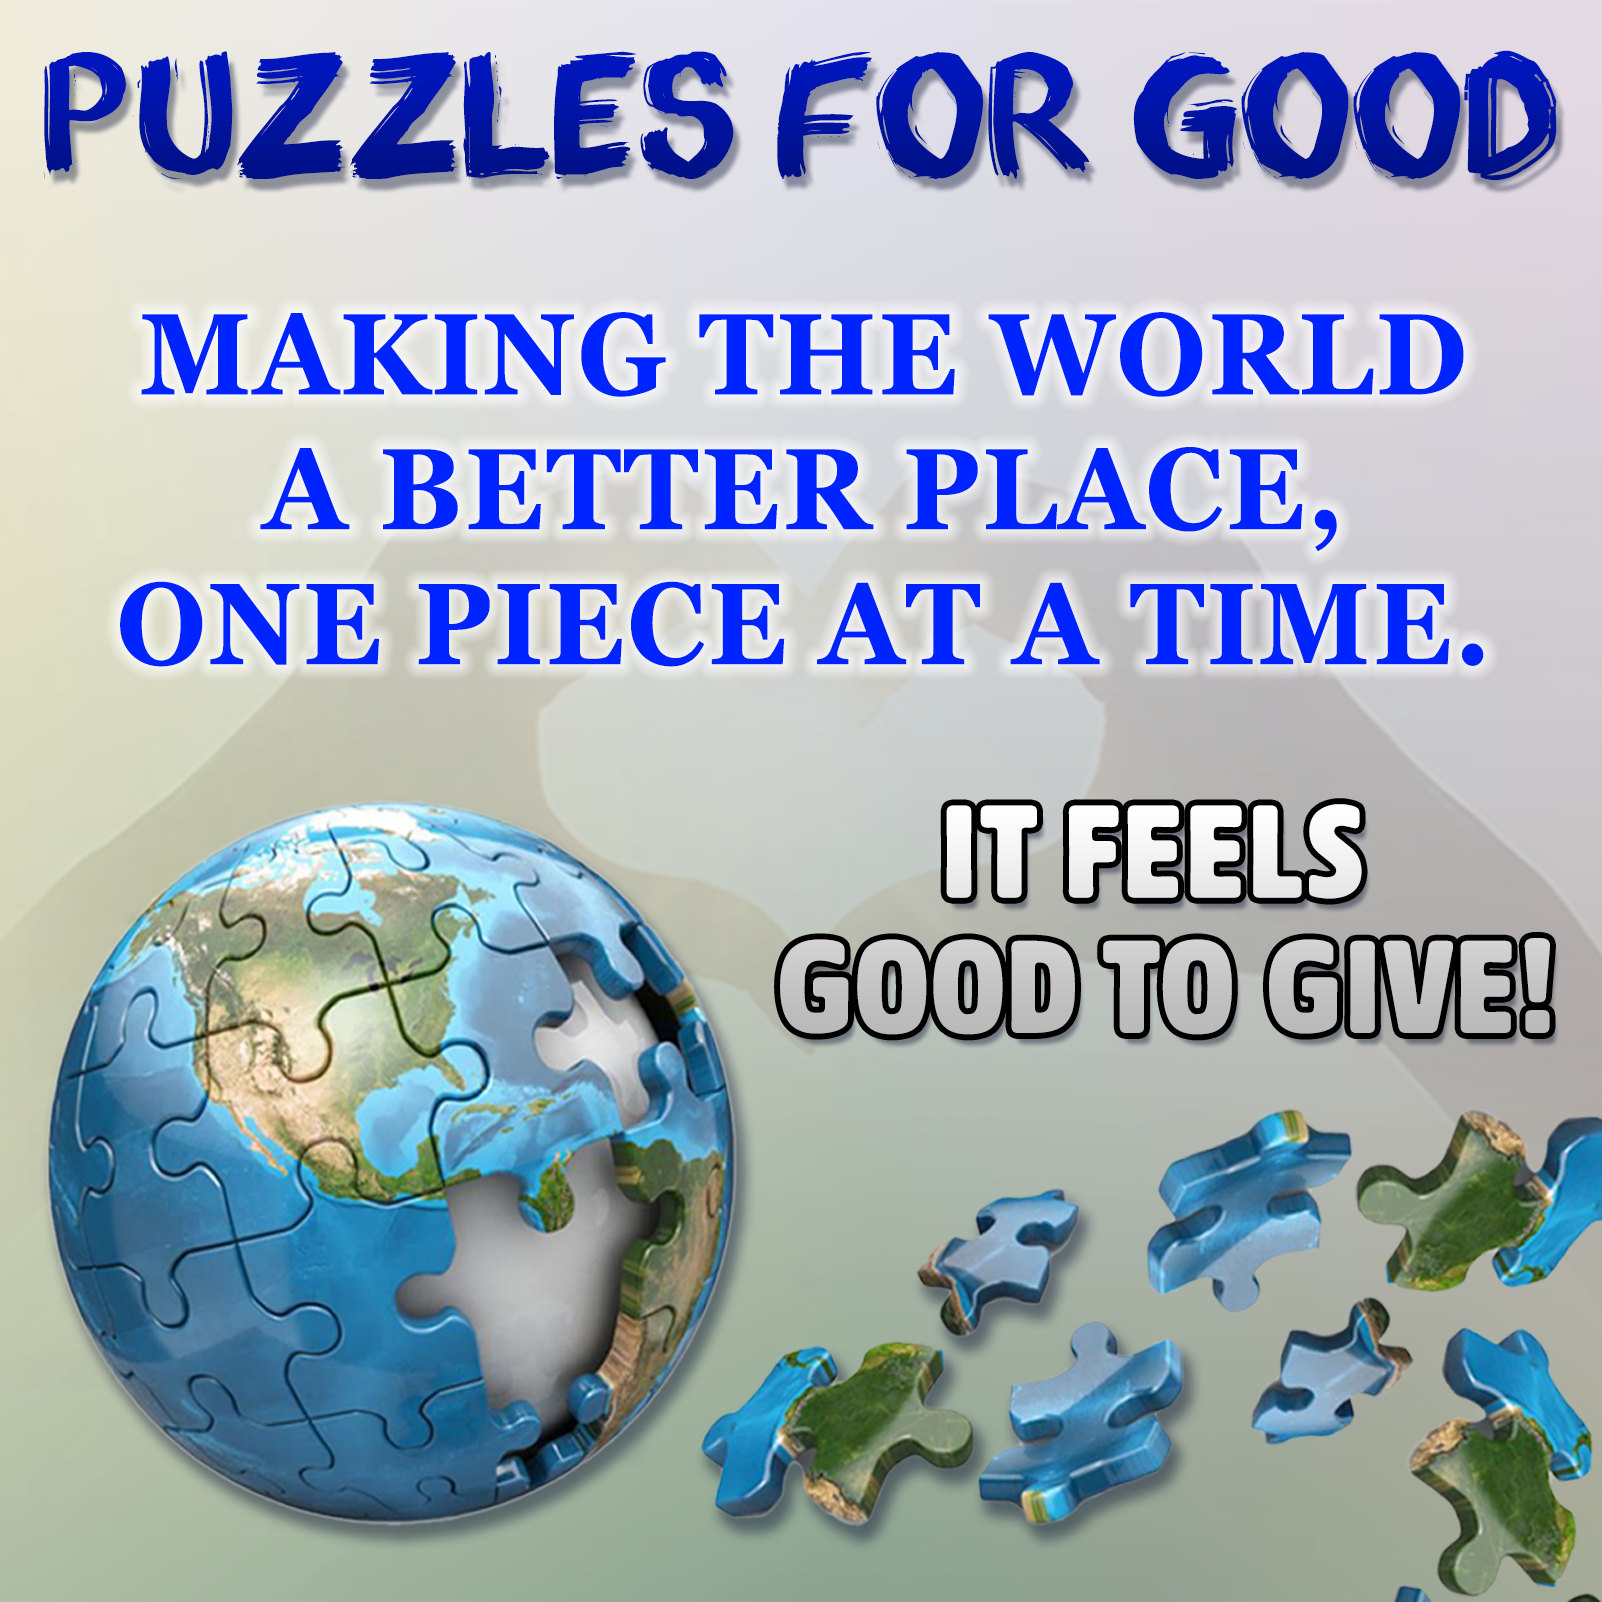 Puzzle 1000 pièces : my puzzle paris pas cher - Puzzle - Achat moins cher